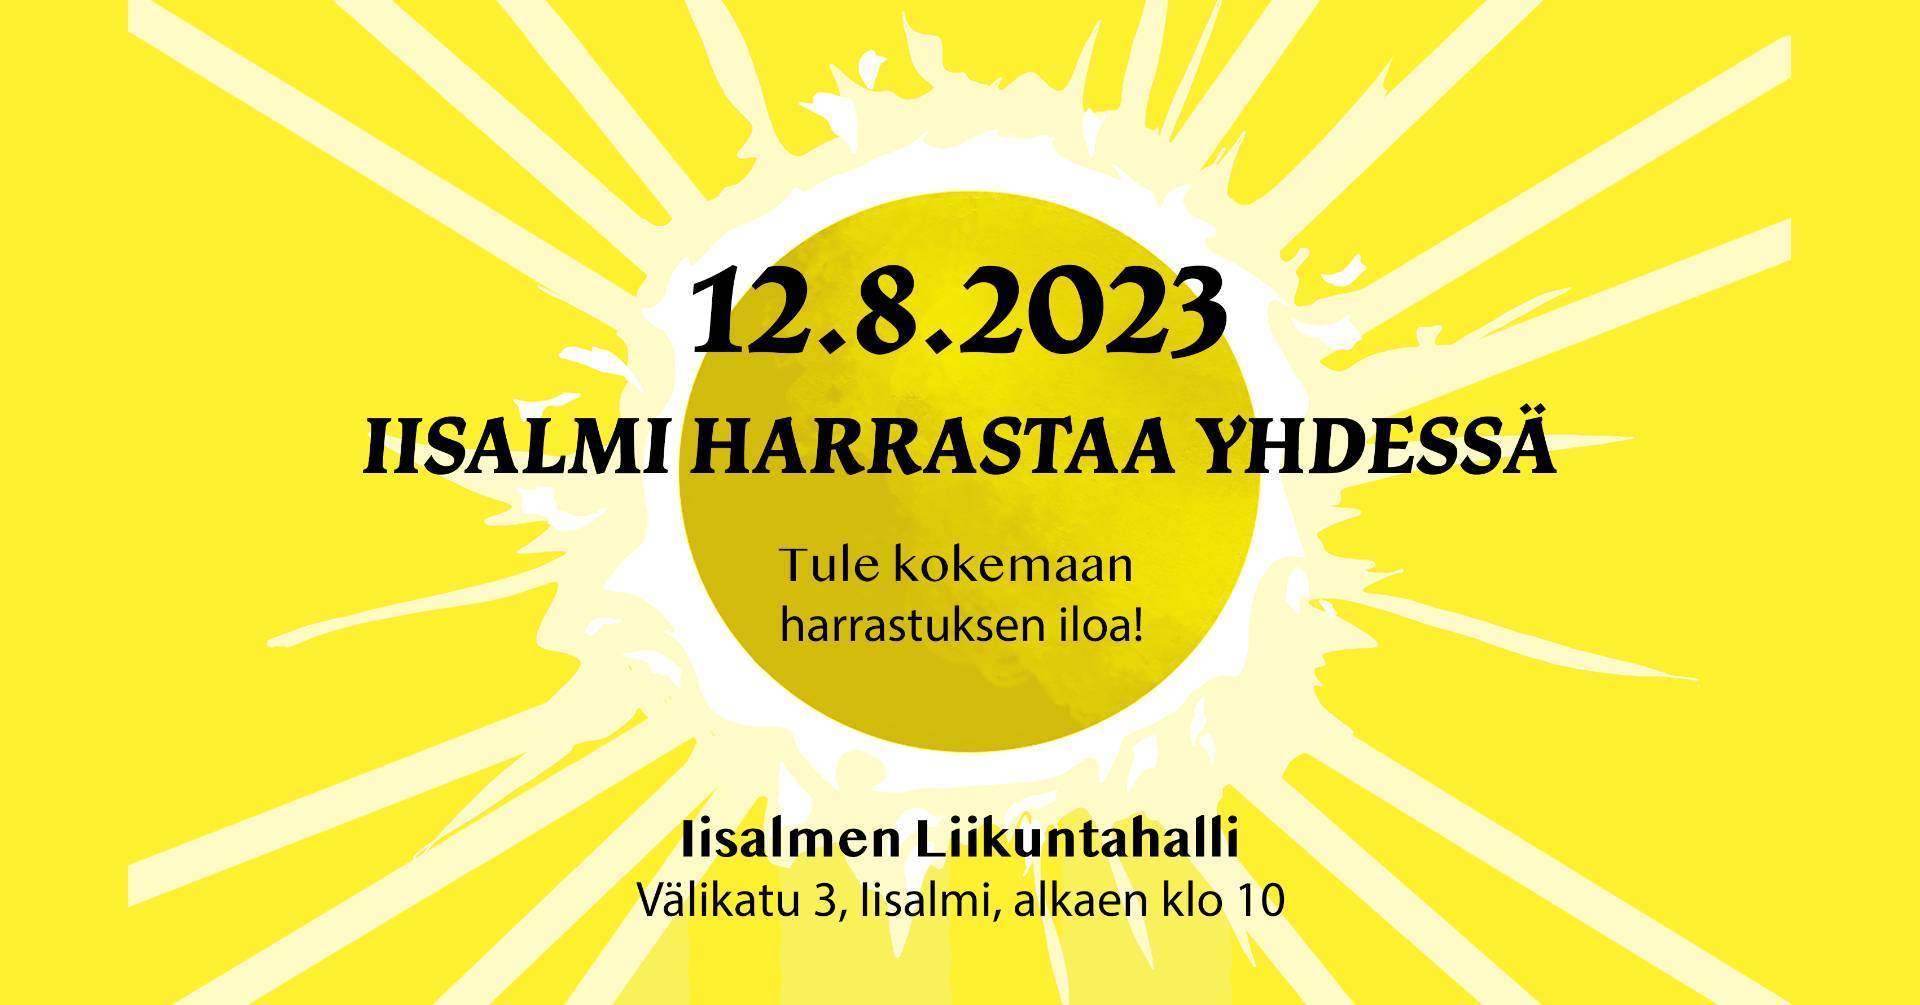 Klubi mukana Harrastetaan yhdessä -tapahtumassa lauantaina 12.8.